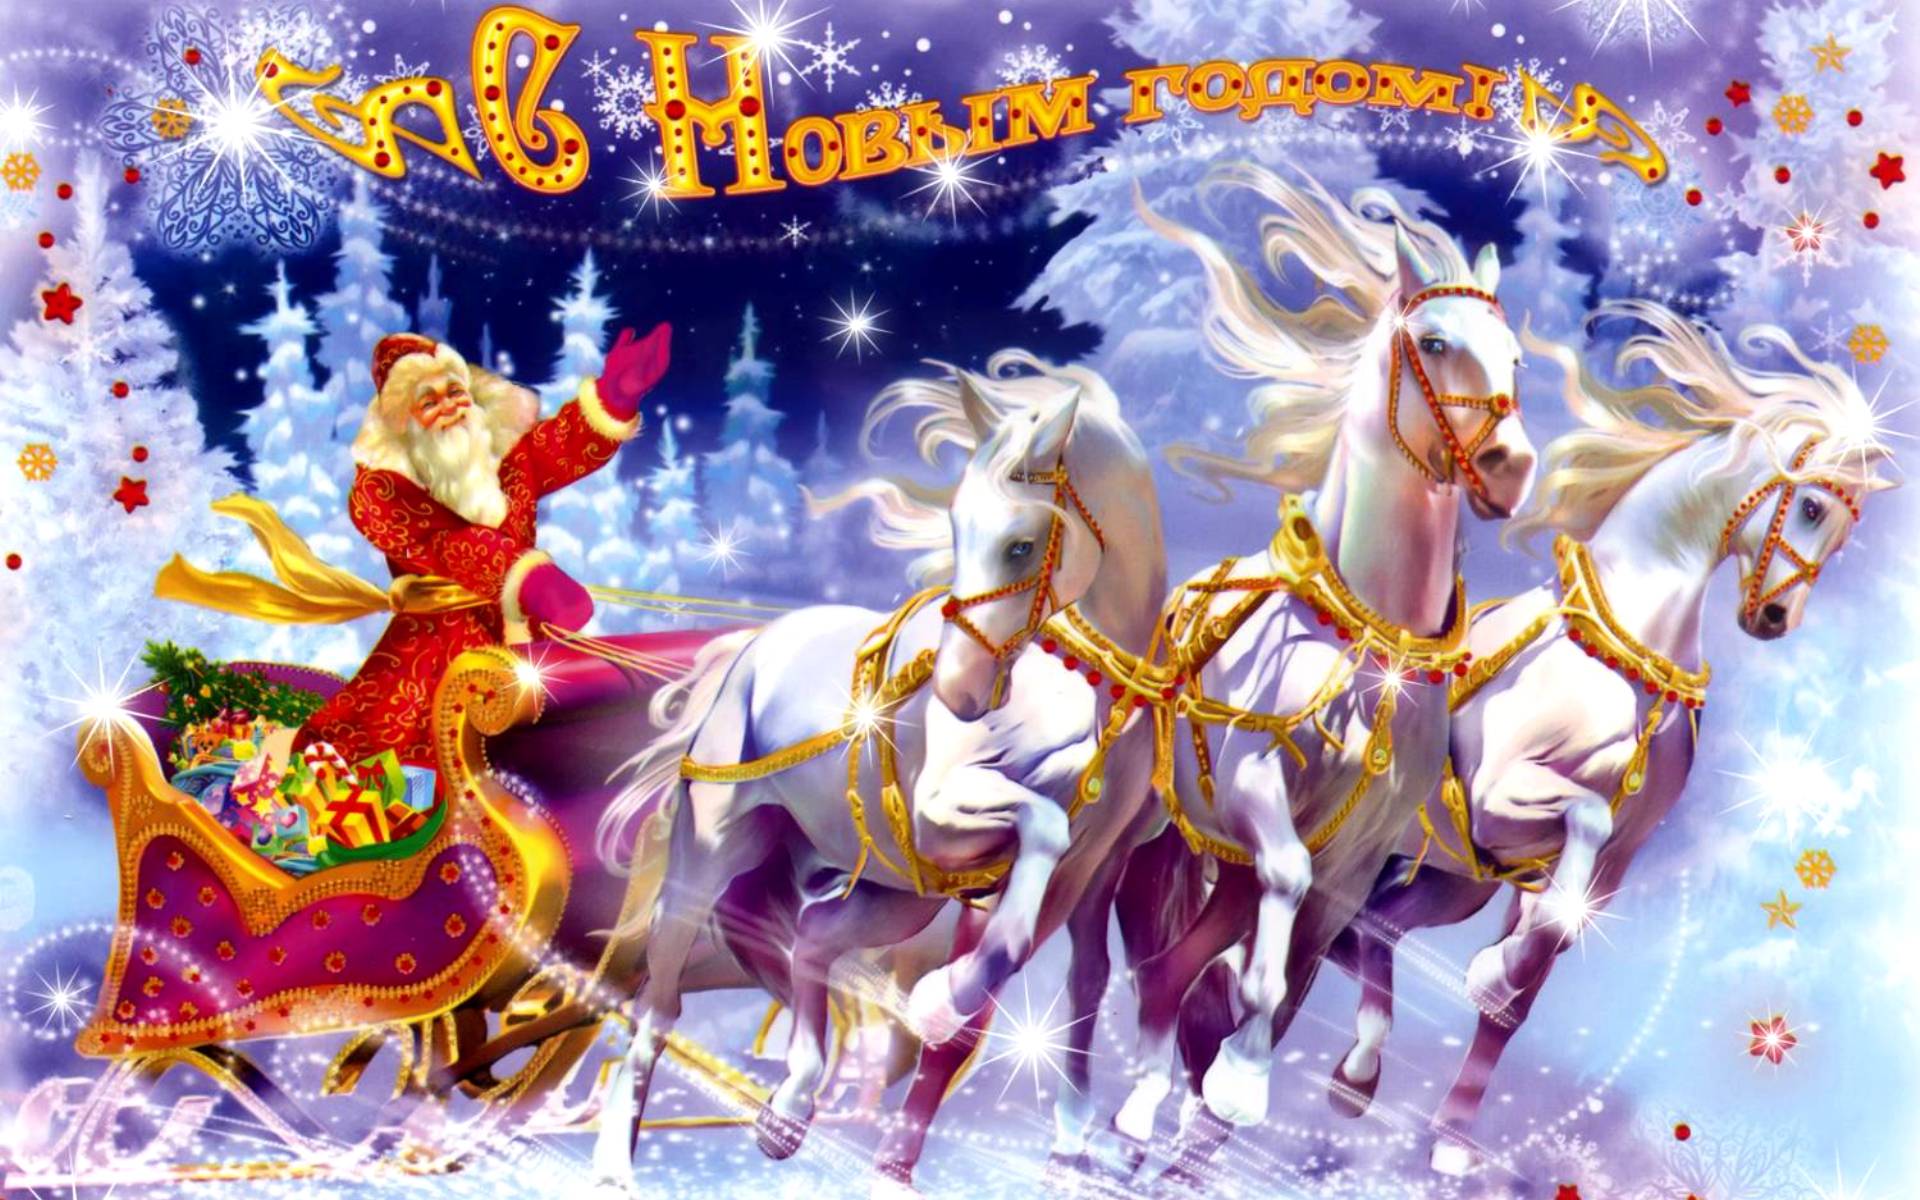 Тройка белых коней и дед Мороз с подарками - C наступающим новым годом 2022 поздравительные картинки